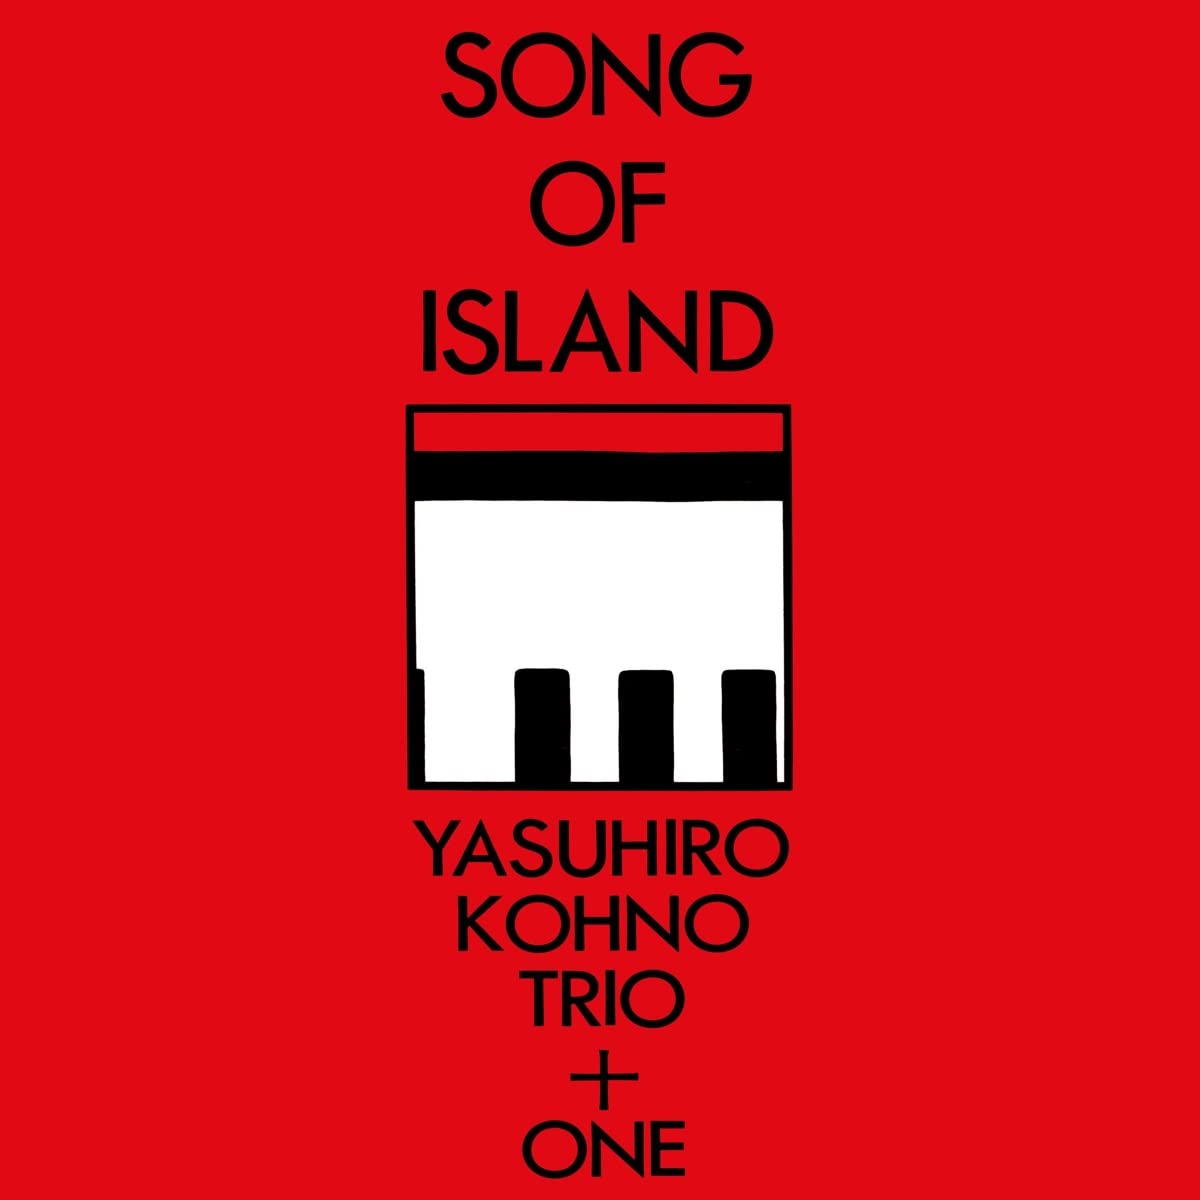 Vinile Yasuhiro Kohno Trio + One - Song Of Island (2 Lp) NUOVO SIGILLATO, EDIZIONE DEL 18/11/2022 SUBITO DISPONIBILE